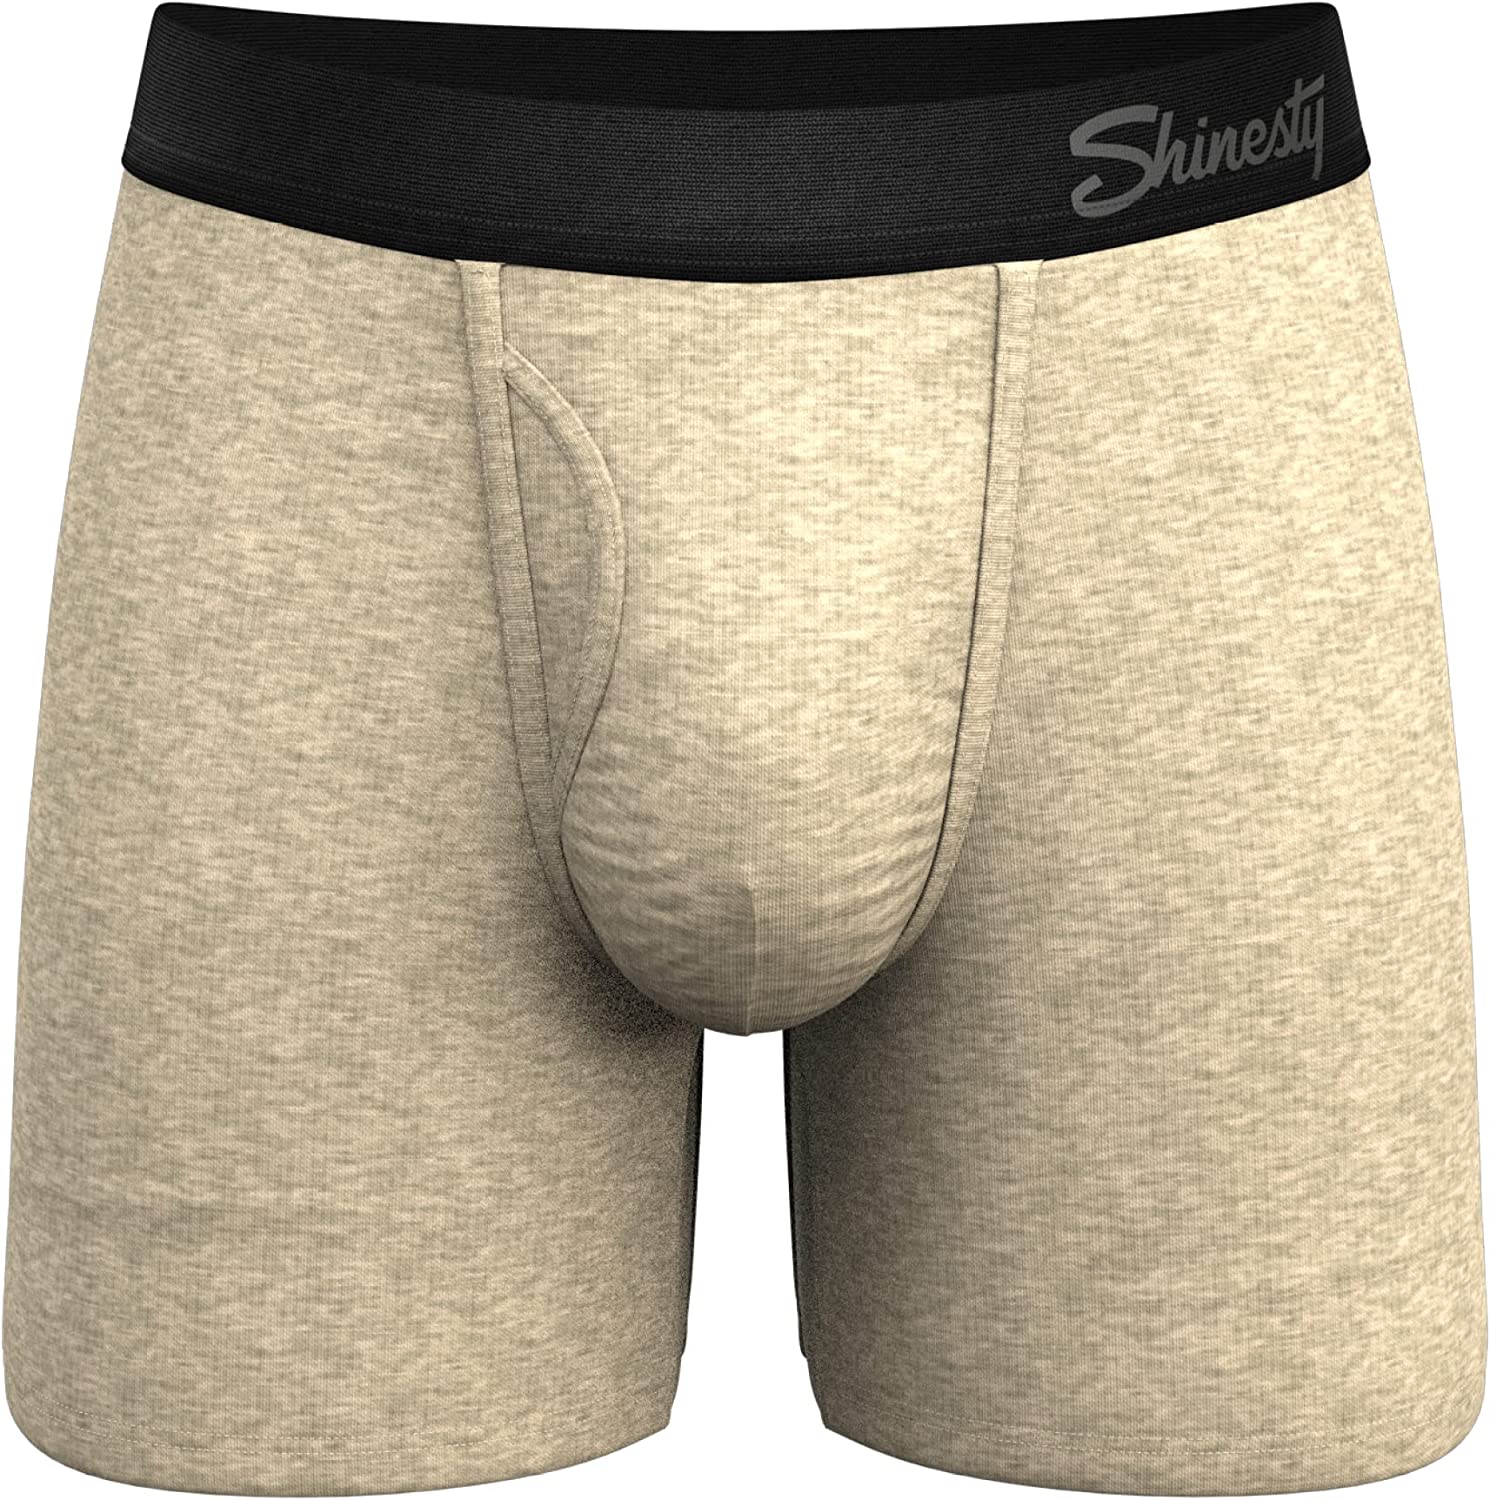 The Scan Me - Shinesty QR Code Ball Hammock Pouch Underwear Briefs